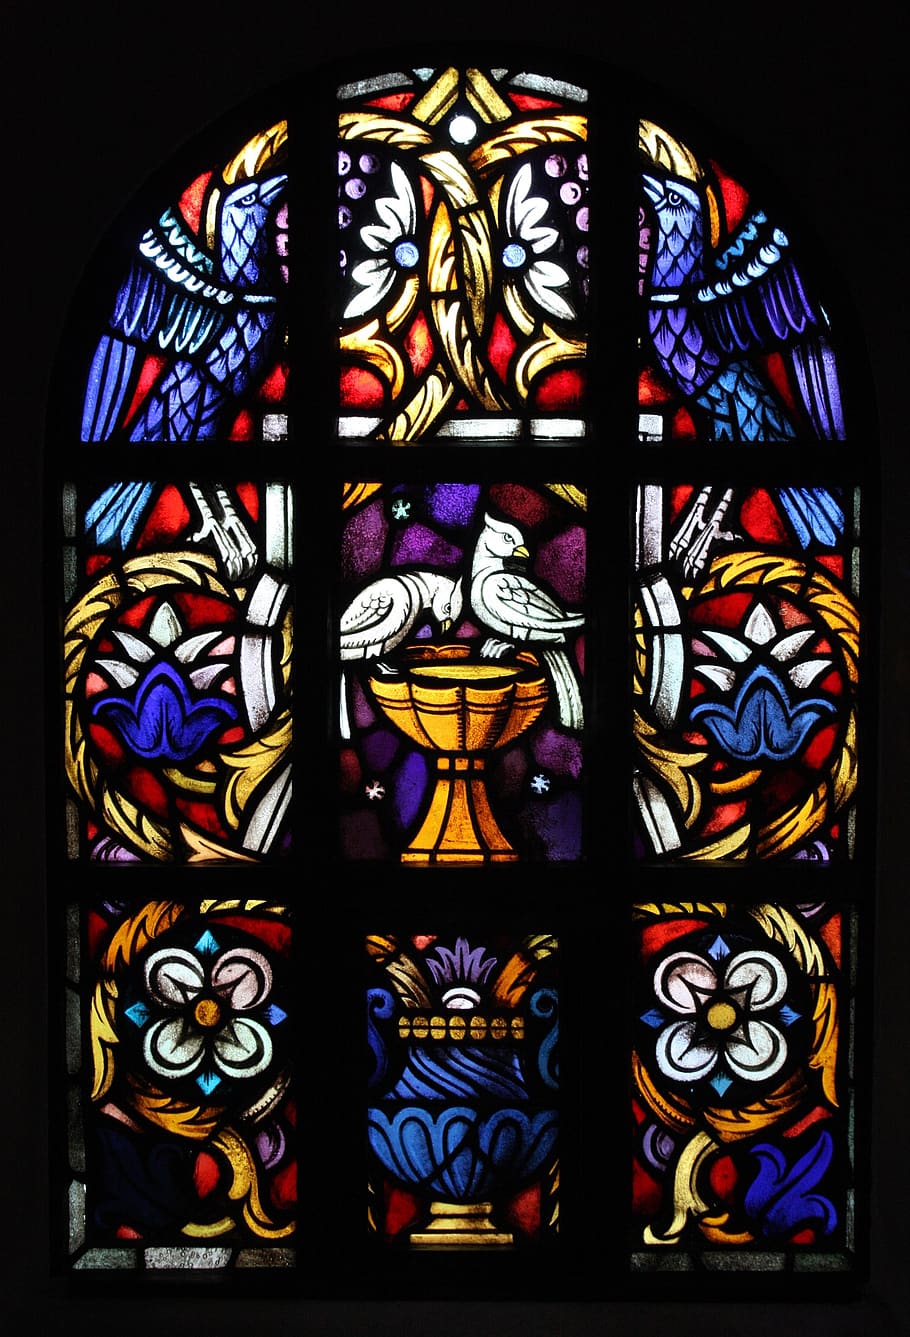 church window, dove, birds, church, glass window, stained glass, stained glass window, christianity, window, glass